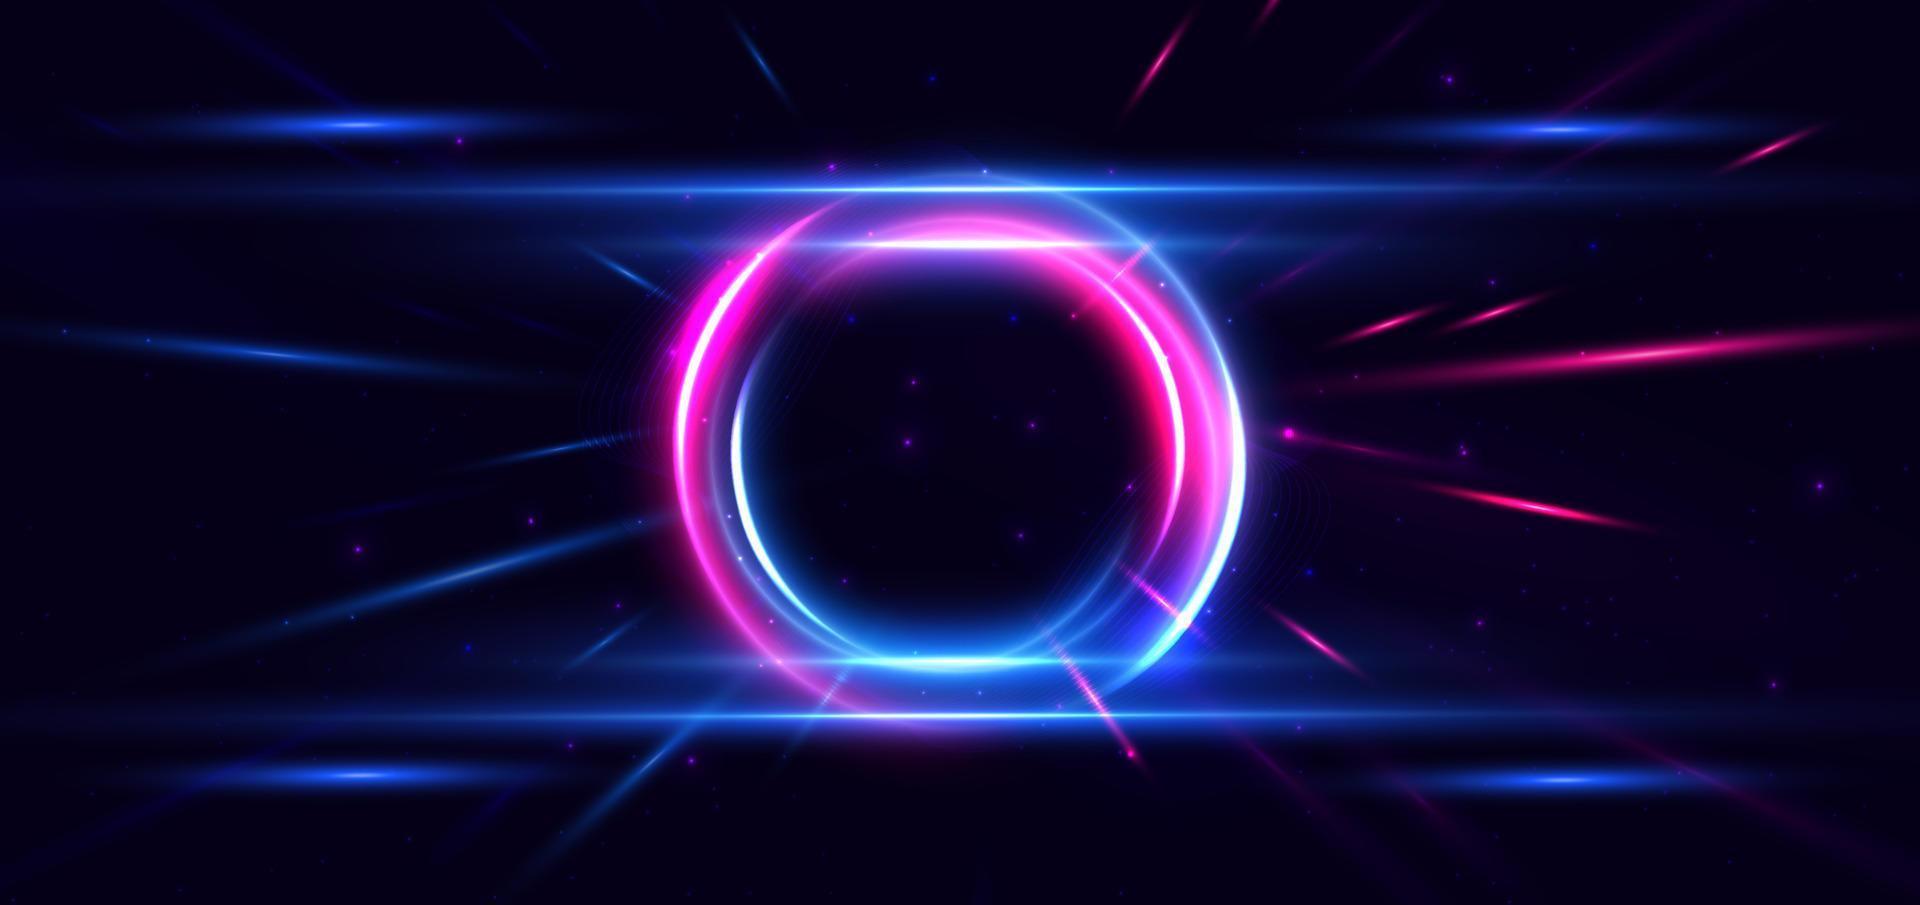 abstrakt teknologi trogen cirklar neon lysande blå och rosa ljus rader med hastighet rörelse fläck effekt på mörk blå bakgrund. vektor